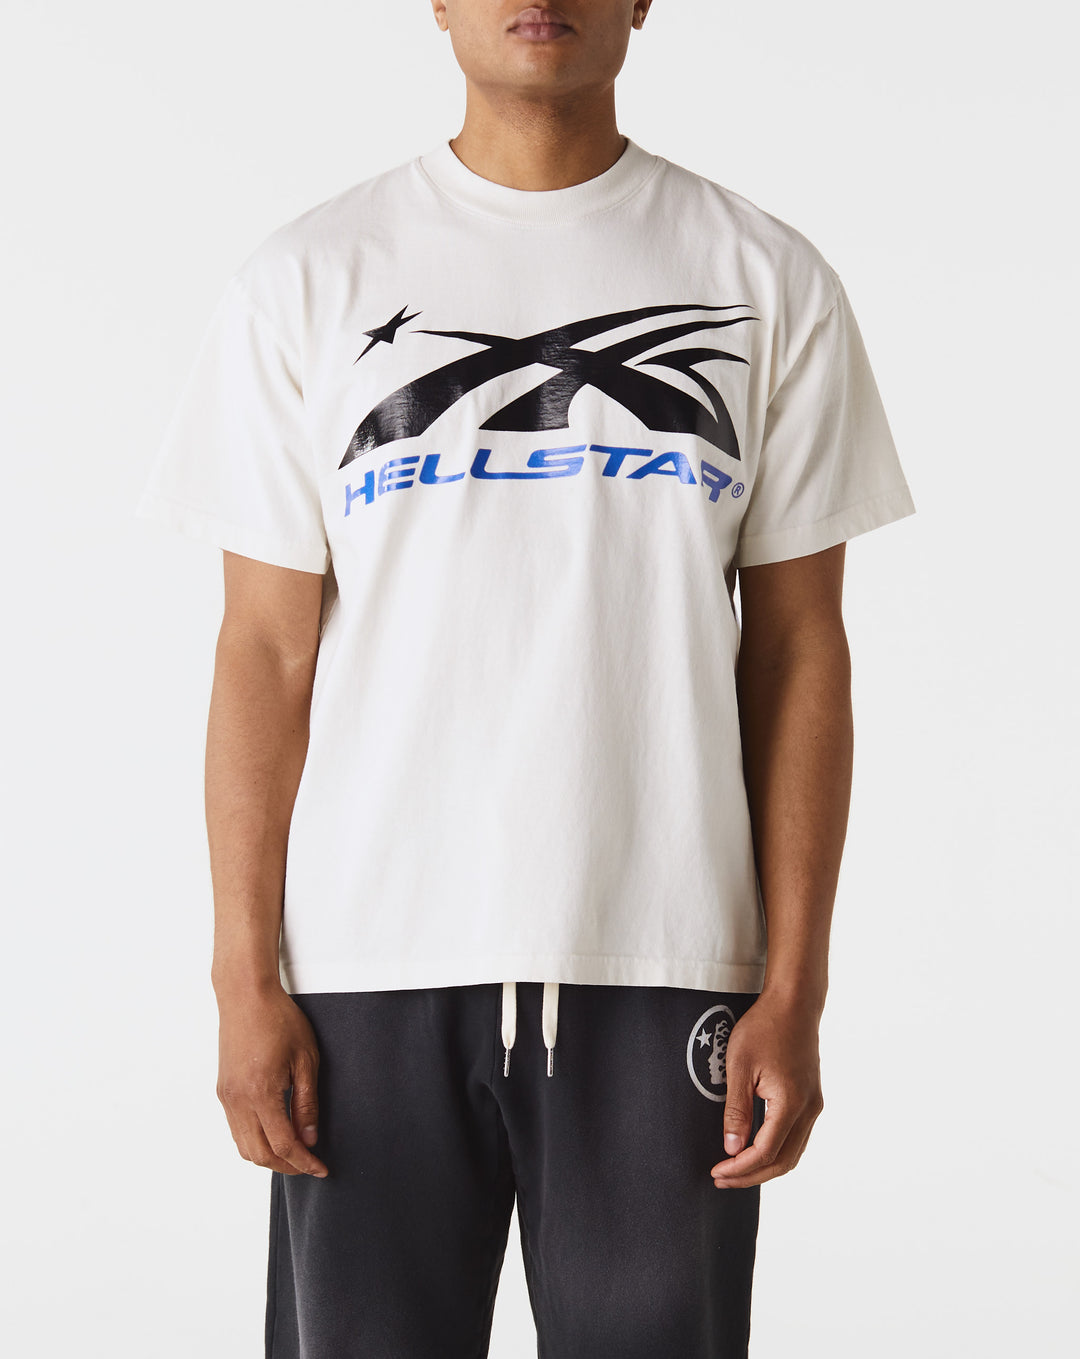 Hellstar Rush Short Sleeve T Shirt Ladies  - Cheap Erlebniswelt-fliegenfischen Jordan outlet